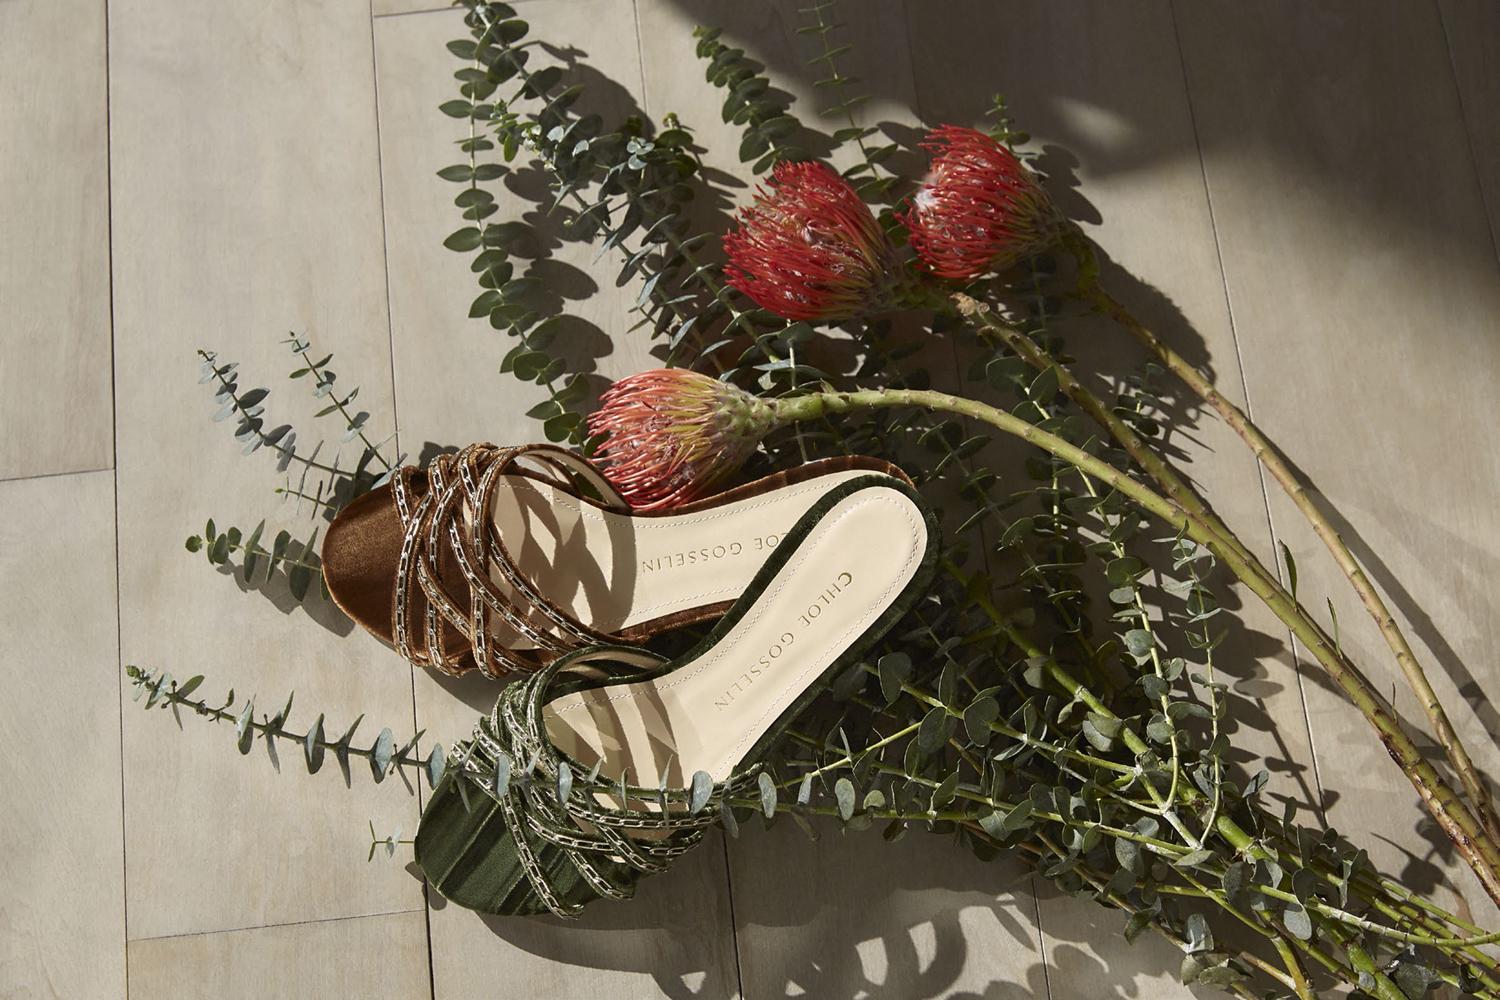 Head Over Heels: 5 Minutes With Shoe Designer Chloe Gosselin